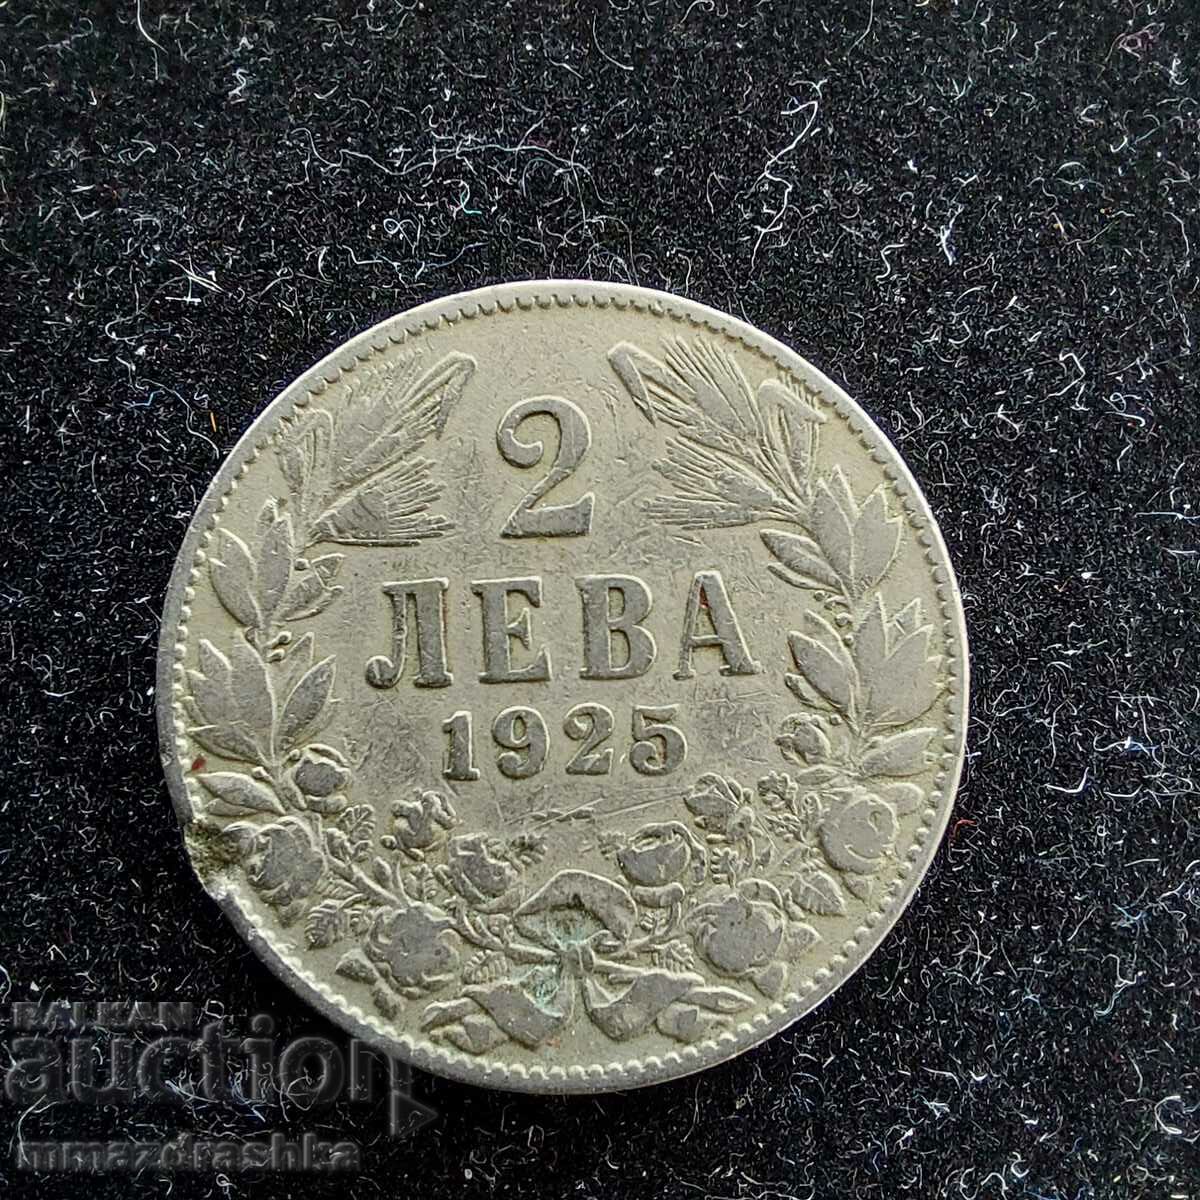 2 лева 1925